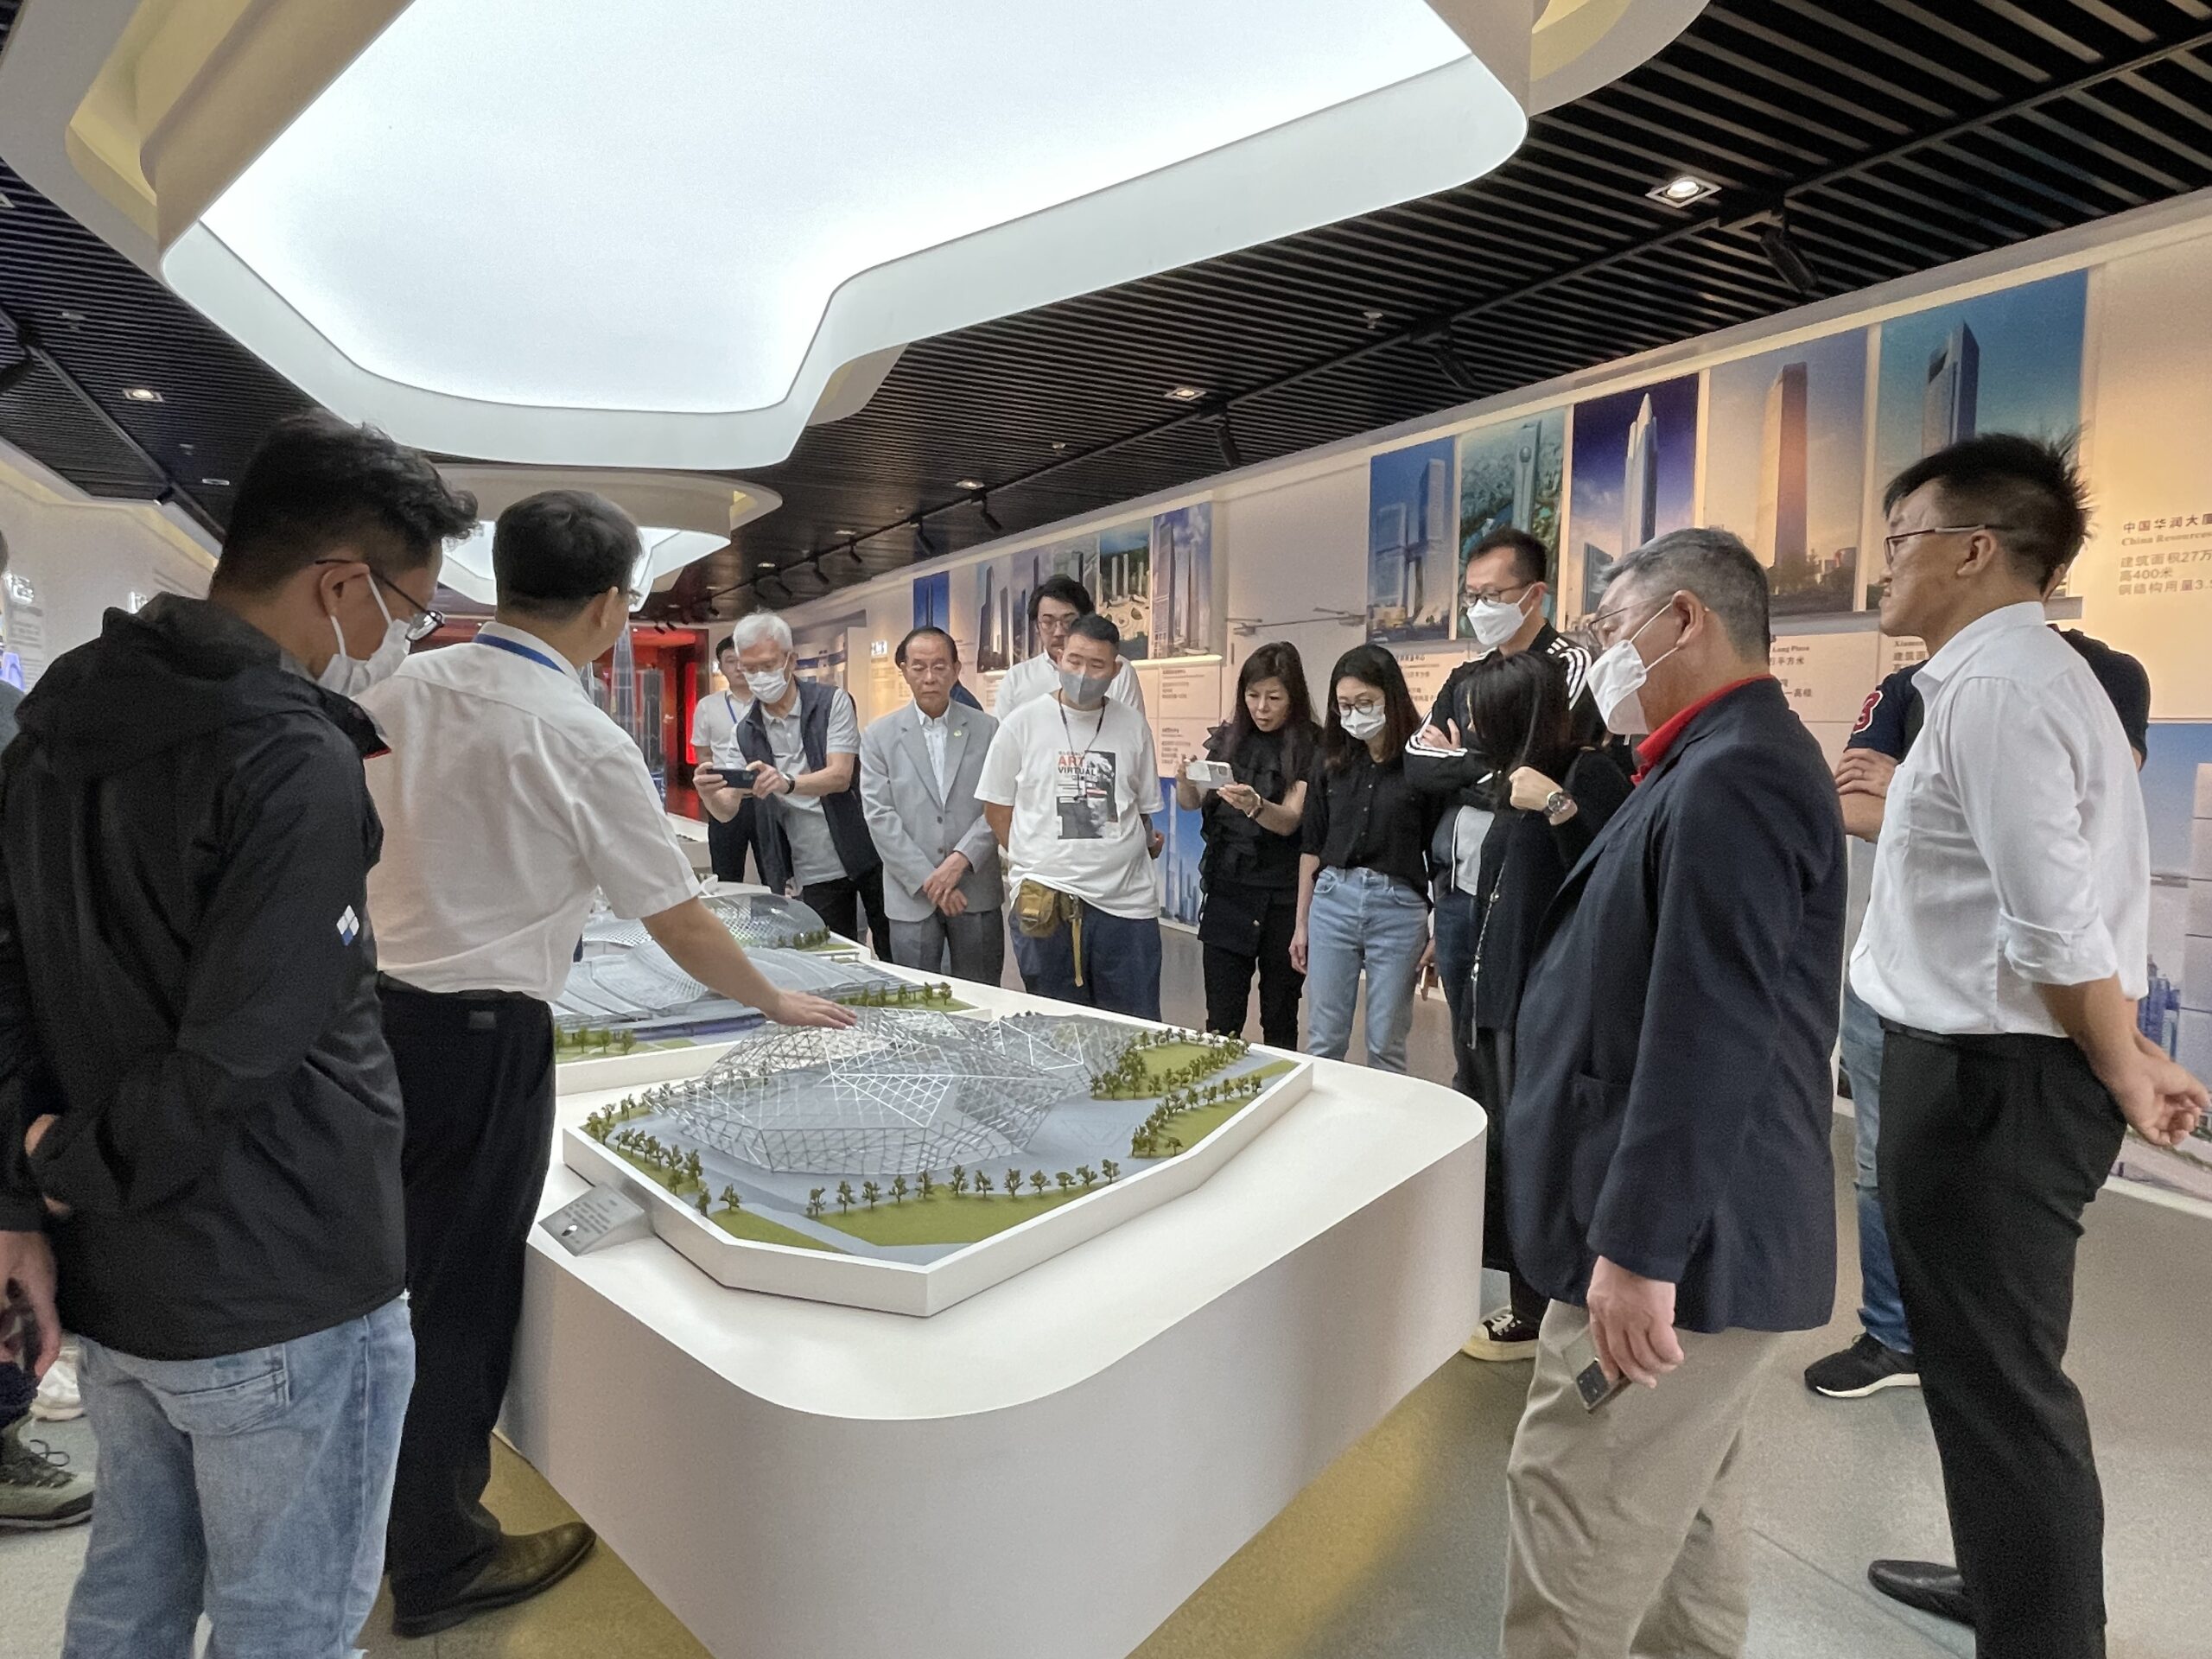 中建科工綠色科技部總經理許航先生向本會代表展示「武漢火車站」項目的模型